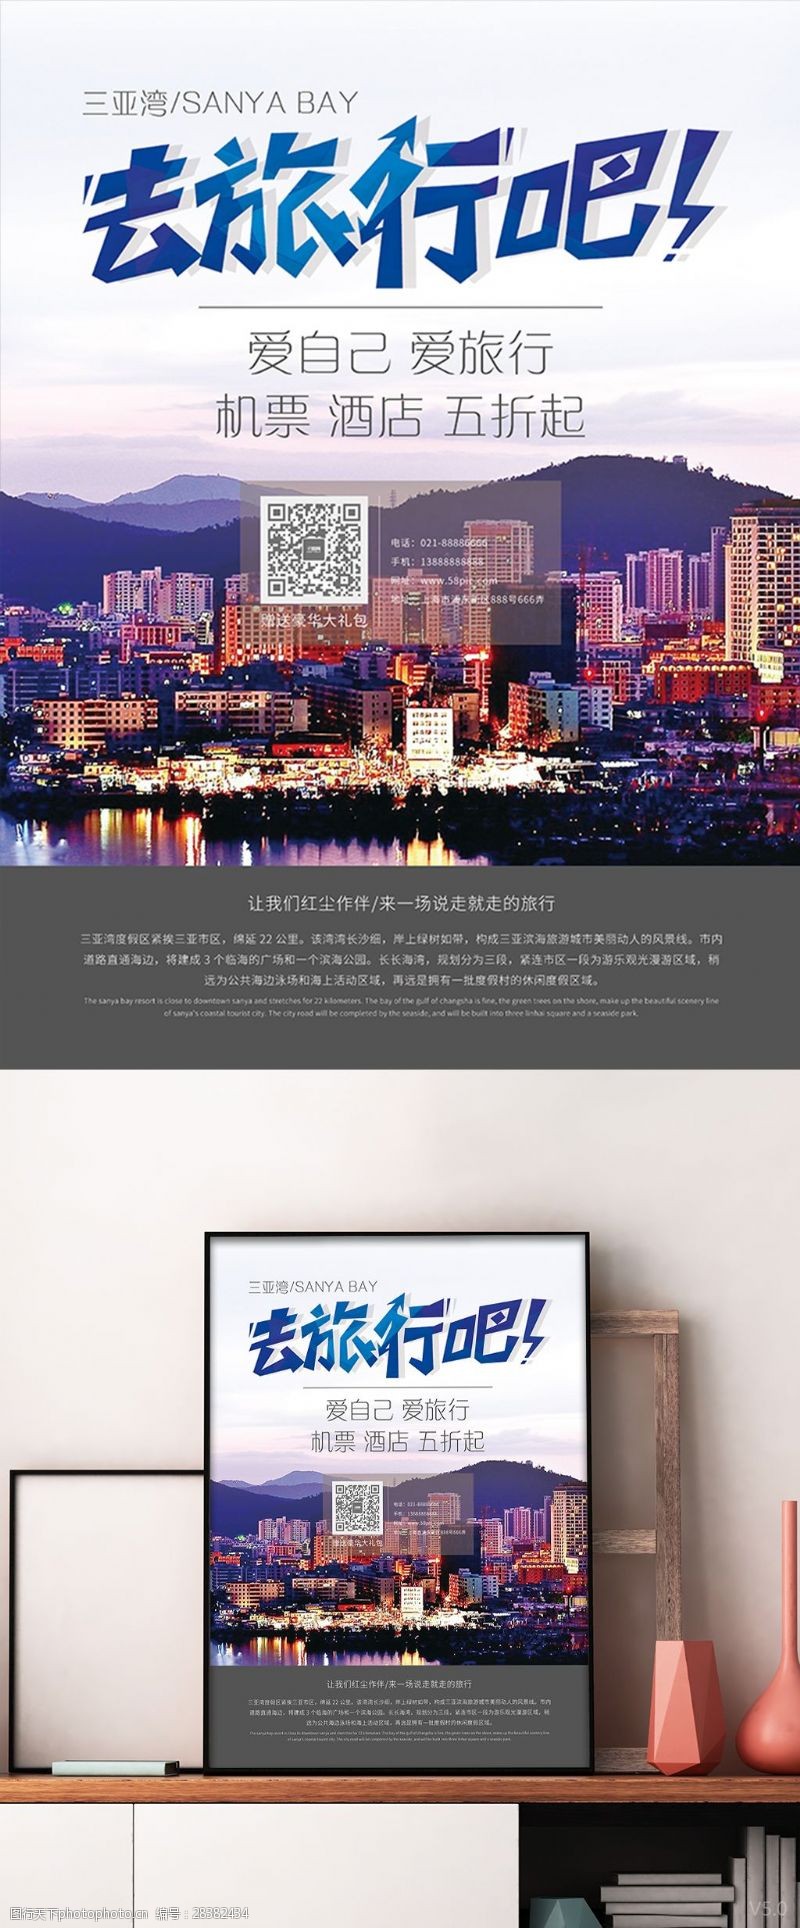 汽车夜店创意海报极简简约海南夜景三亚湾旅游海报